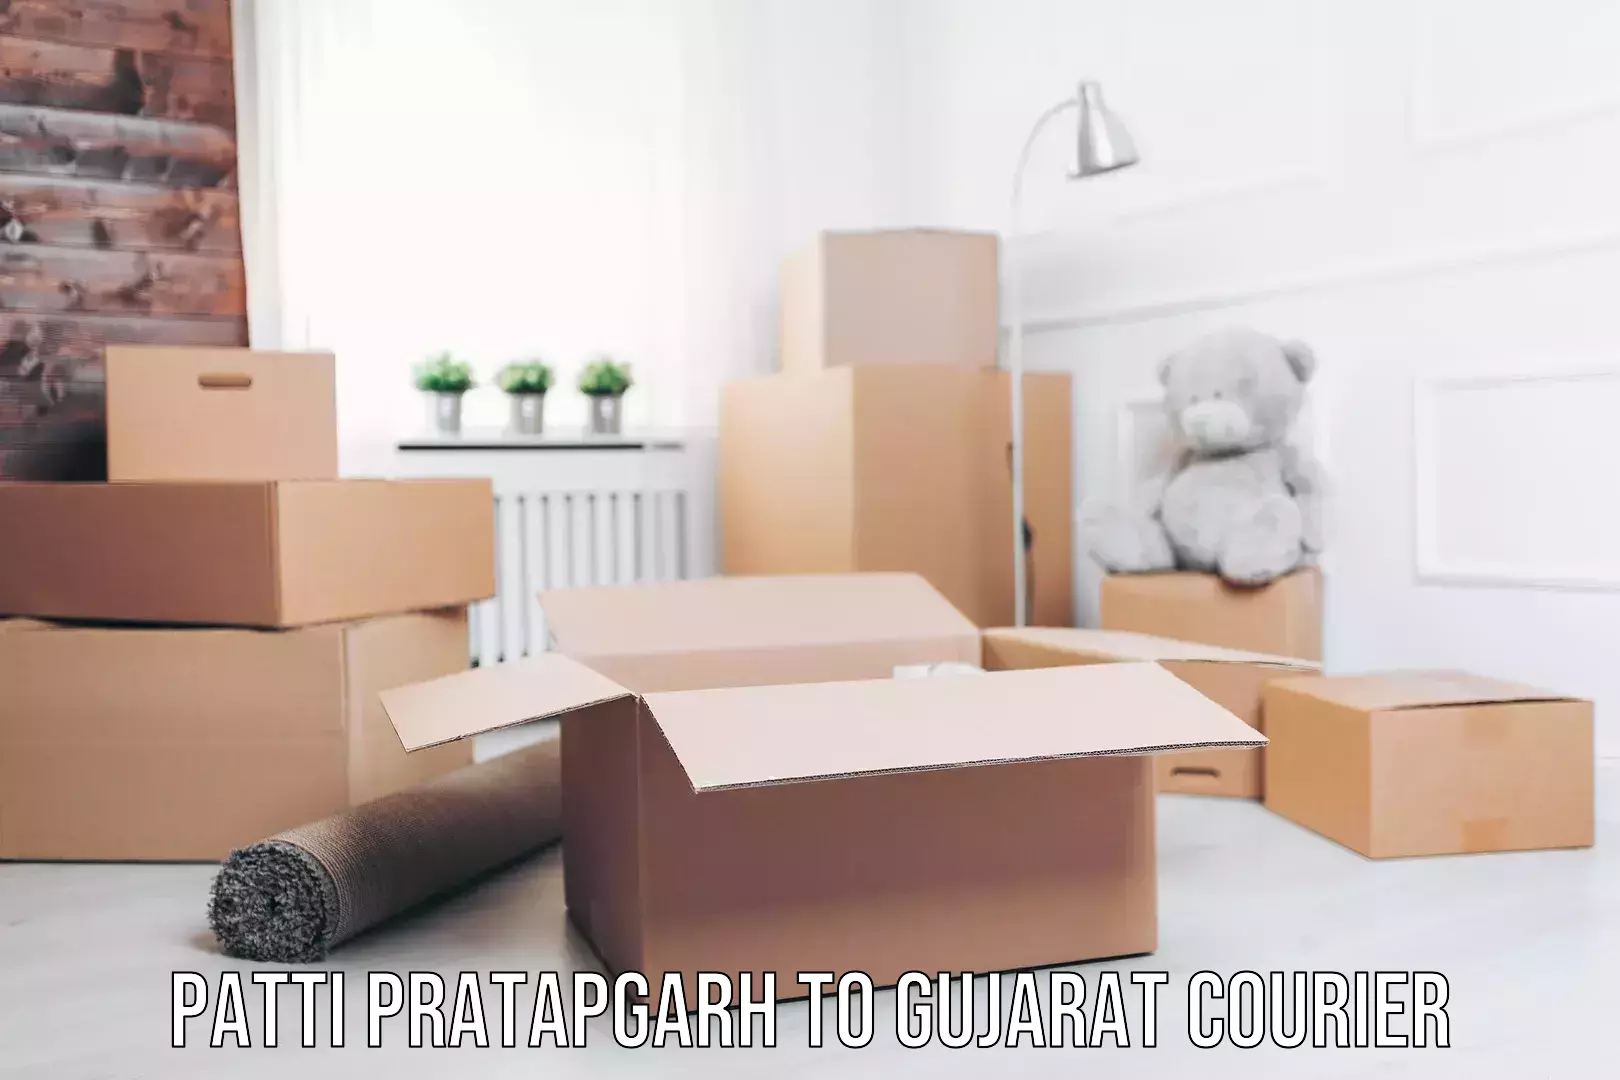 Efficient packing services in Patti Pratapgarh to Gujarat